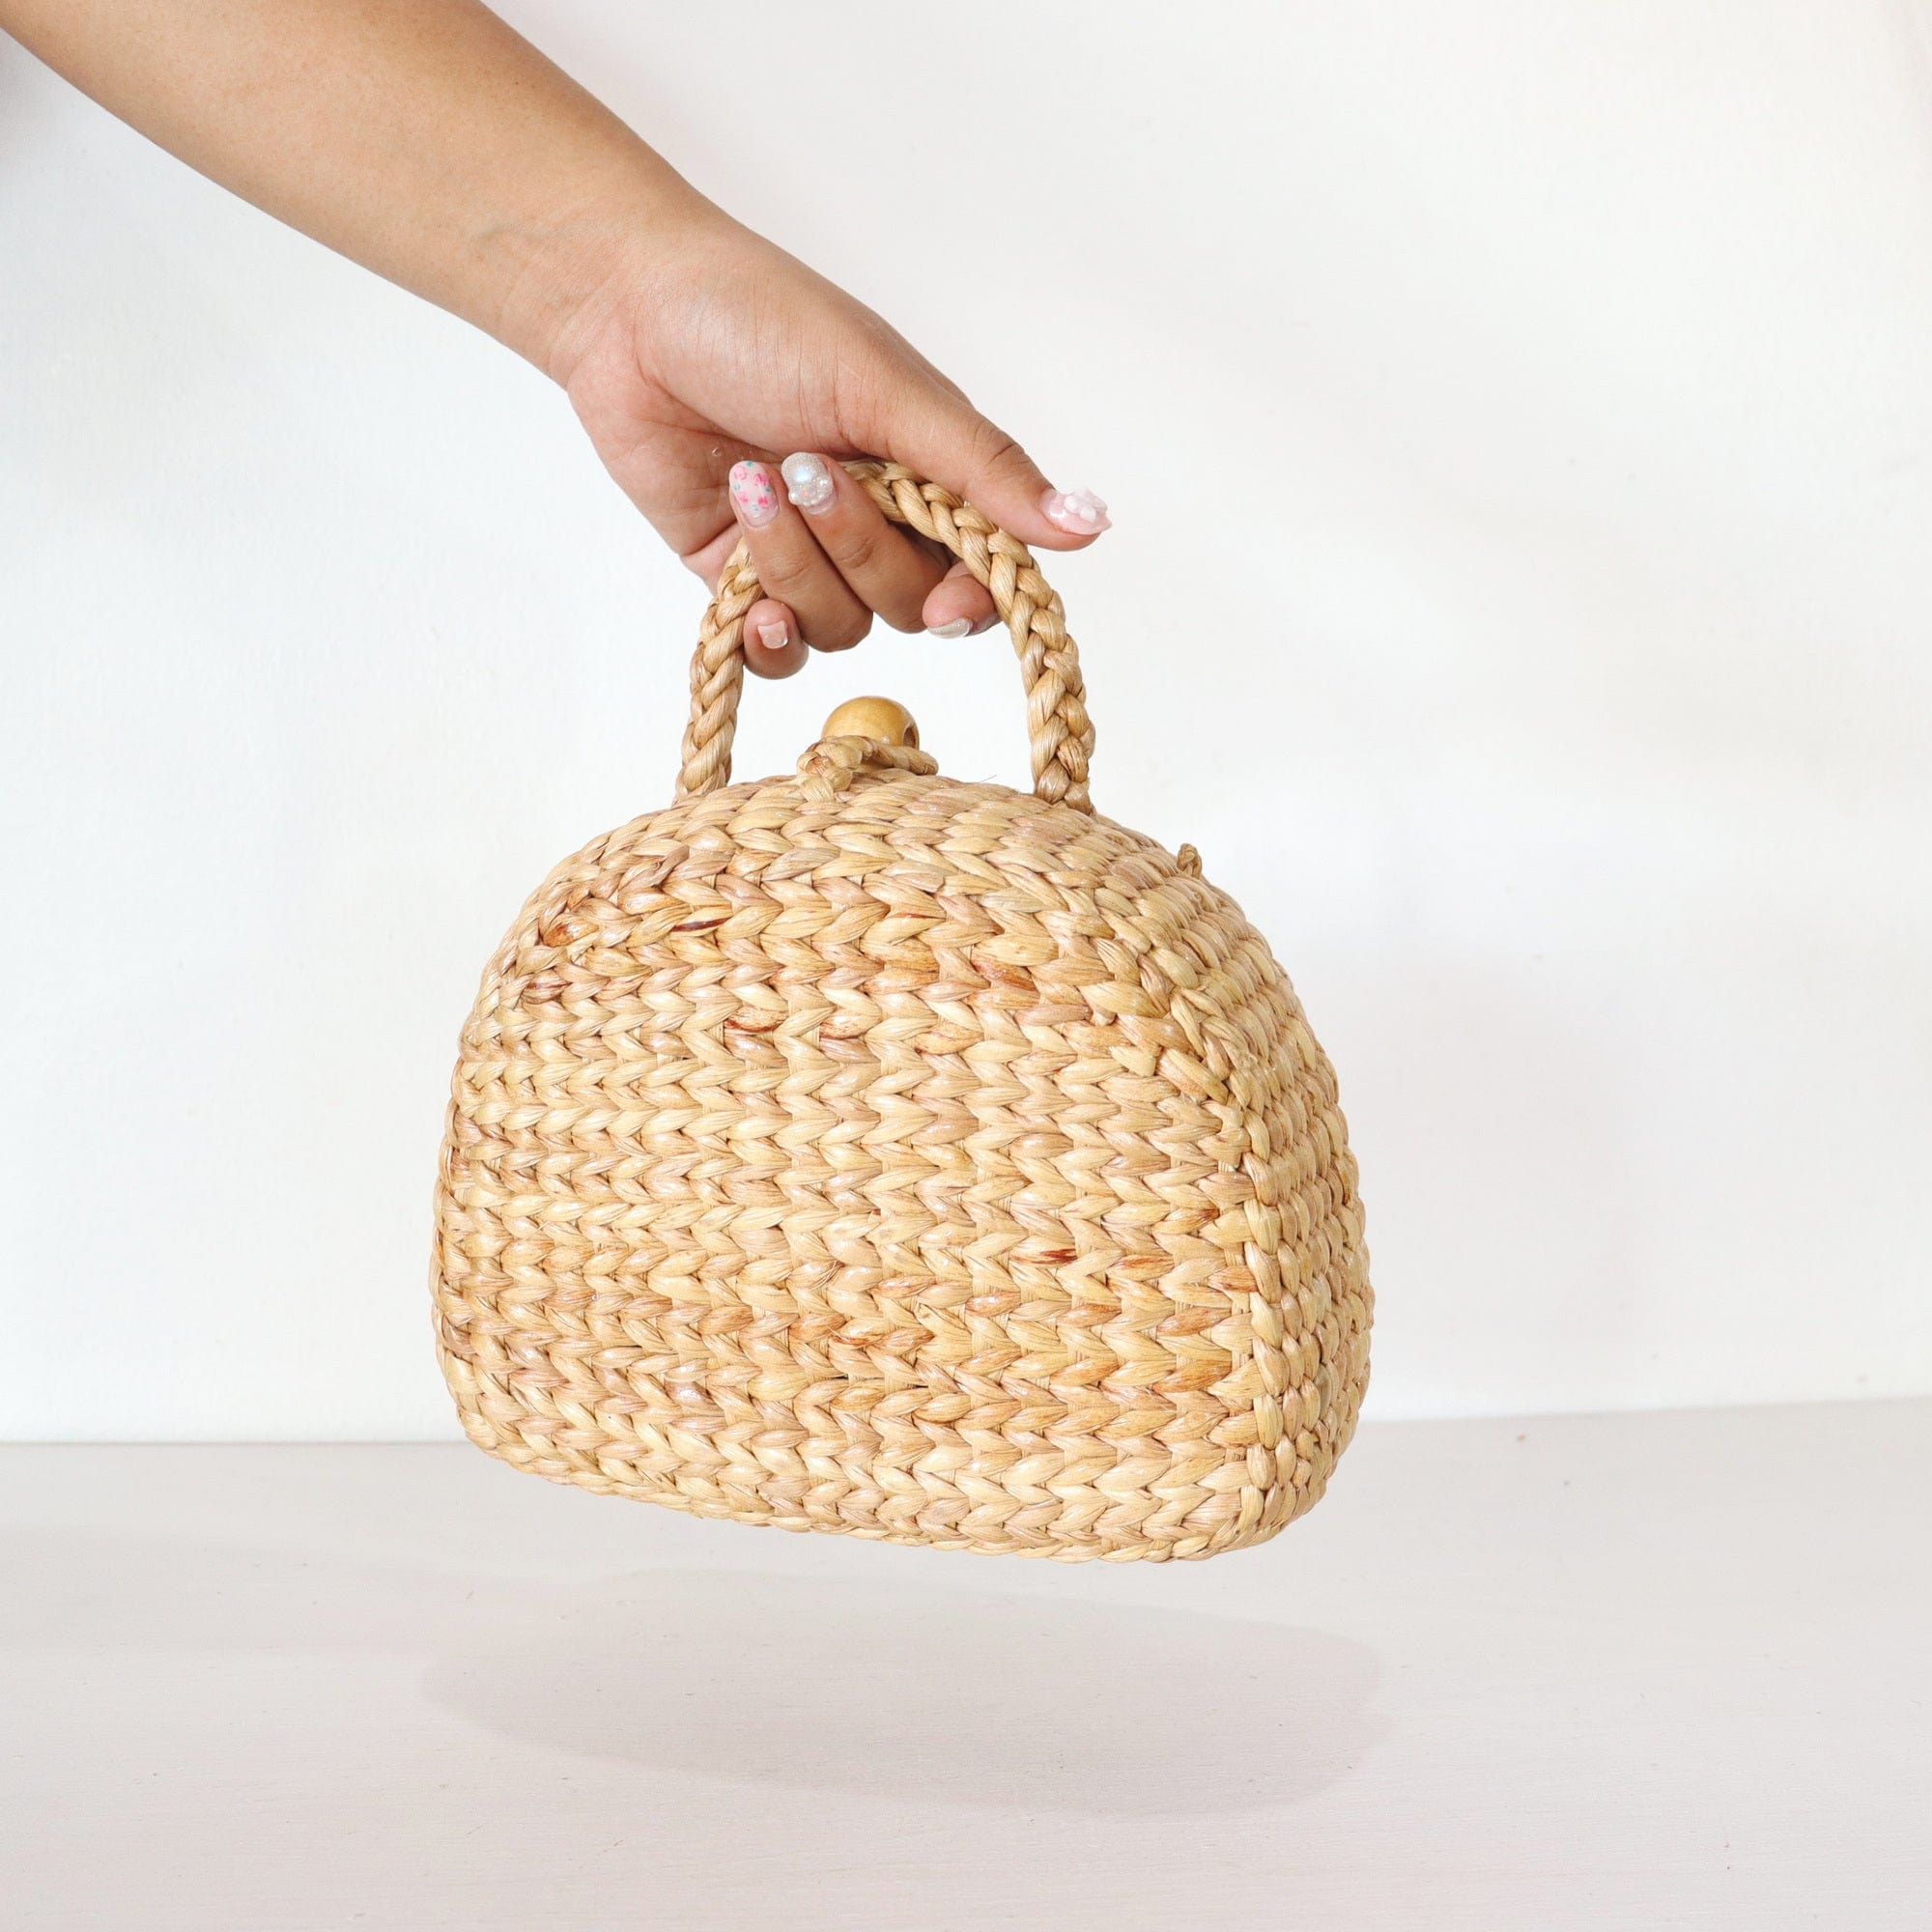 THAIHOME Handbags SA WI TREE - Mini Straw Bag